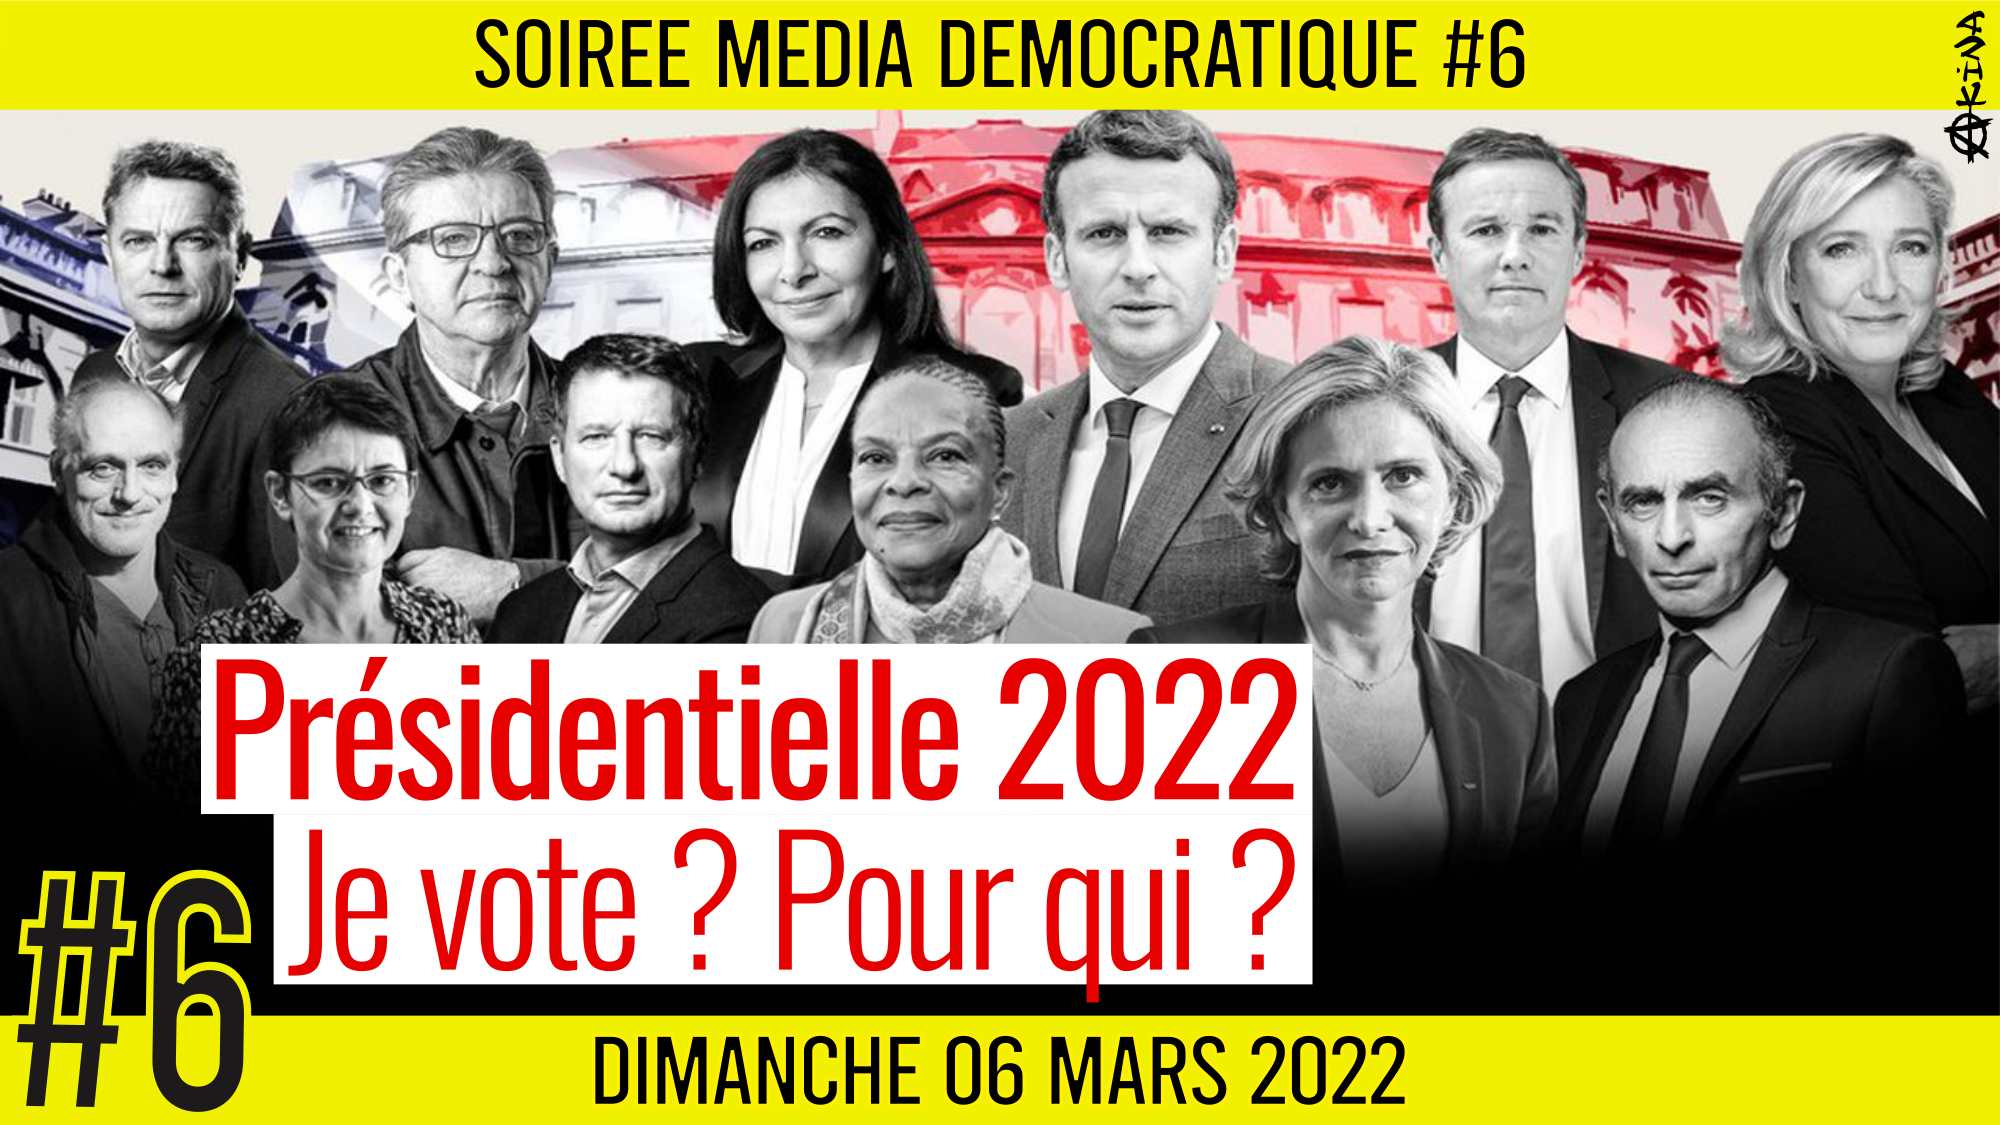 ⏳ SOIRÉE MÉDIA DÉMOCRATIQUE #6 🛡 Présidentielle 2022 : Je vote ? Pour qui ? 👥 7 citoyens 📆 06-03-2022